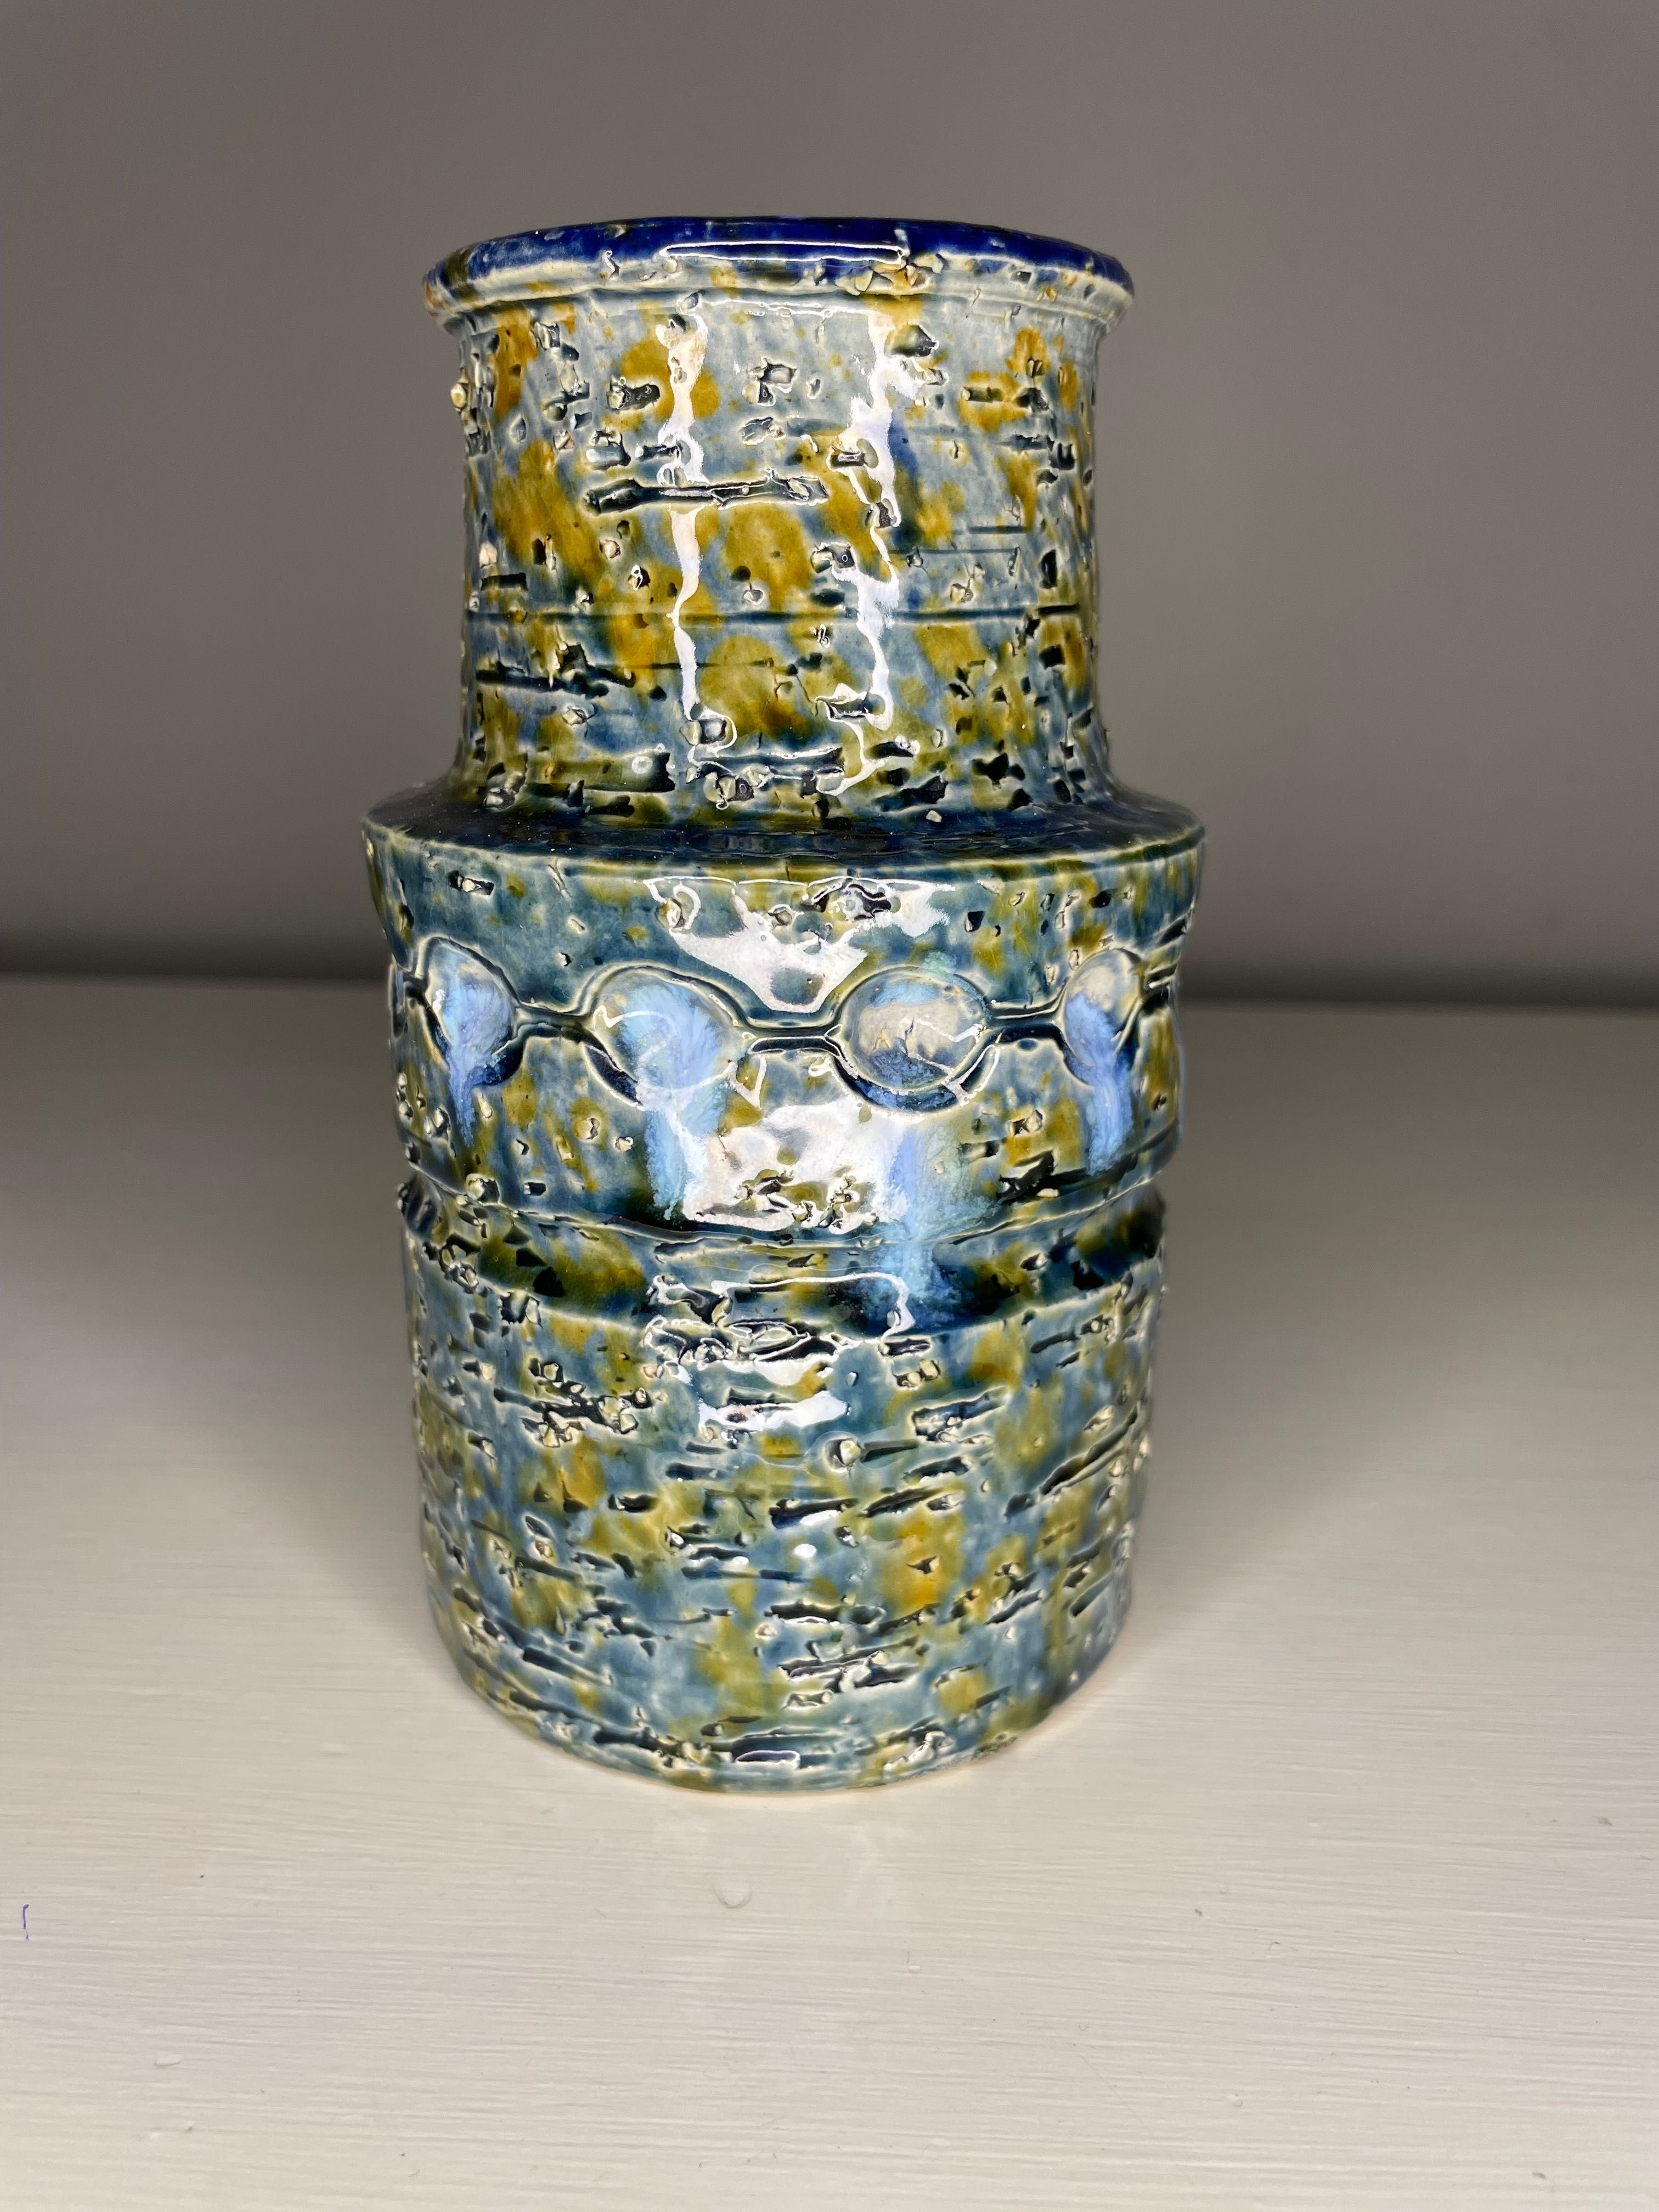 Pięknie szkliwiony ceramiczny wazon. Stara ceramika artystyczna.